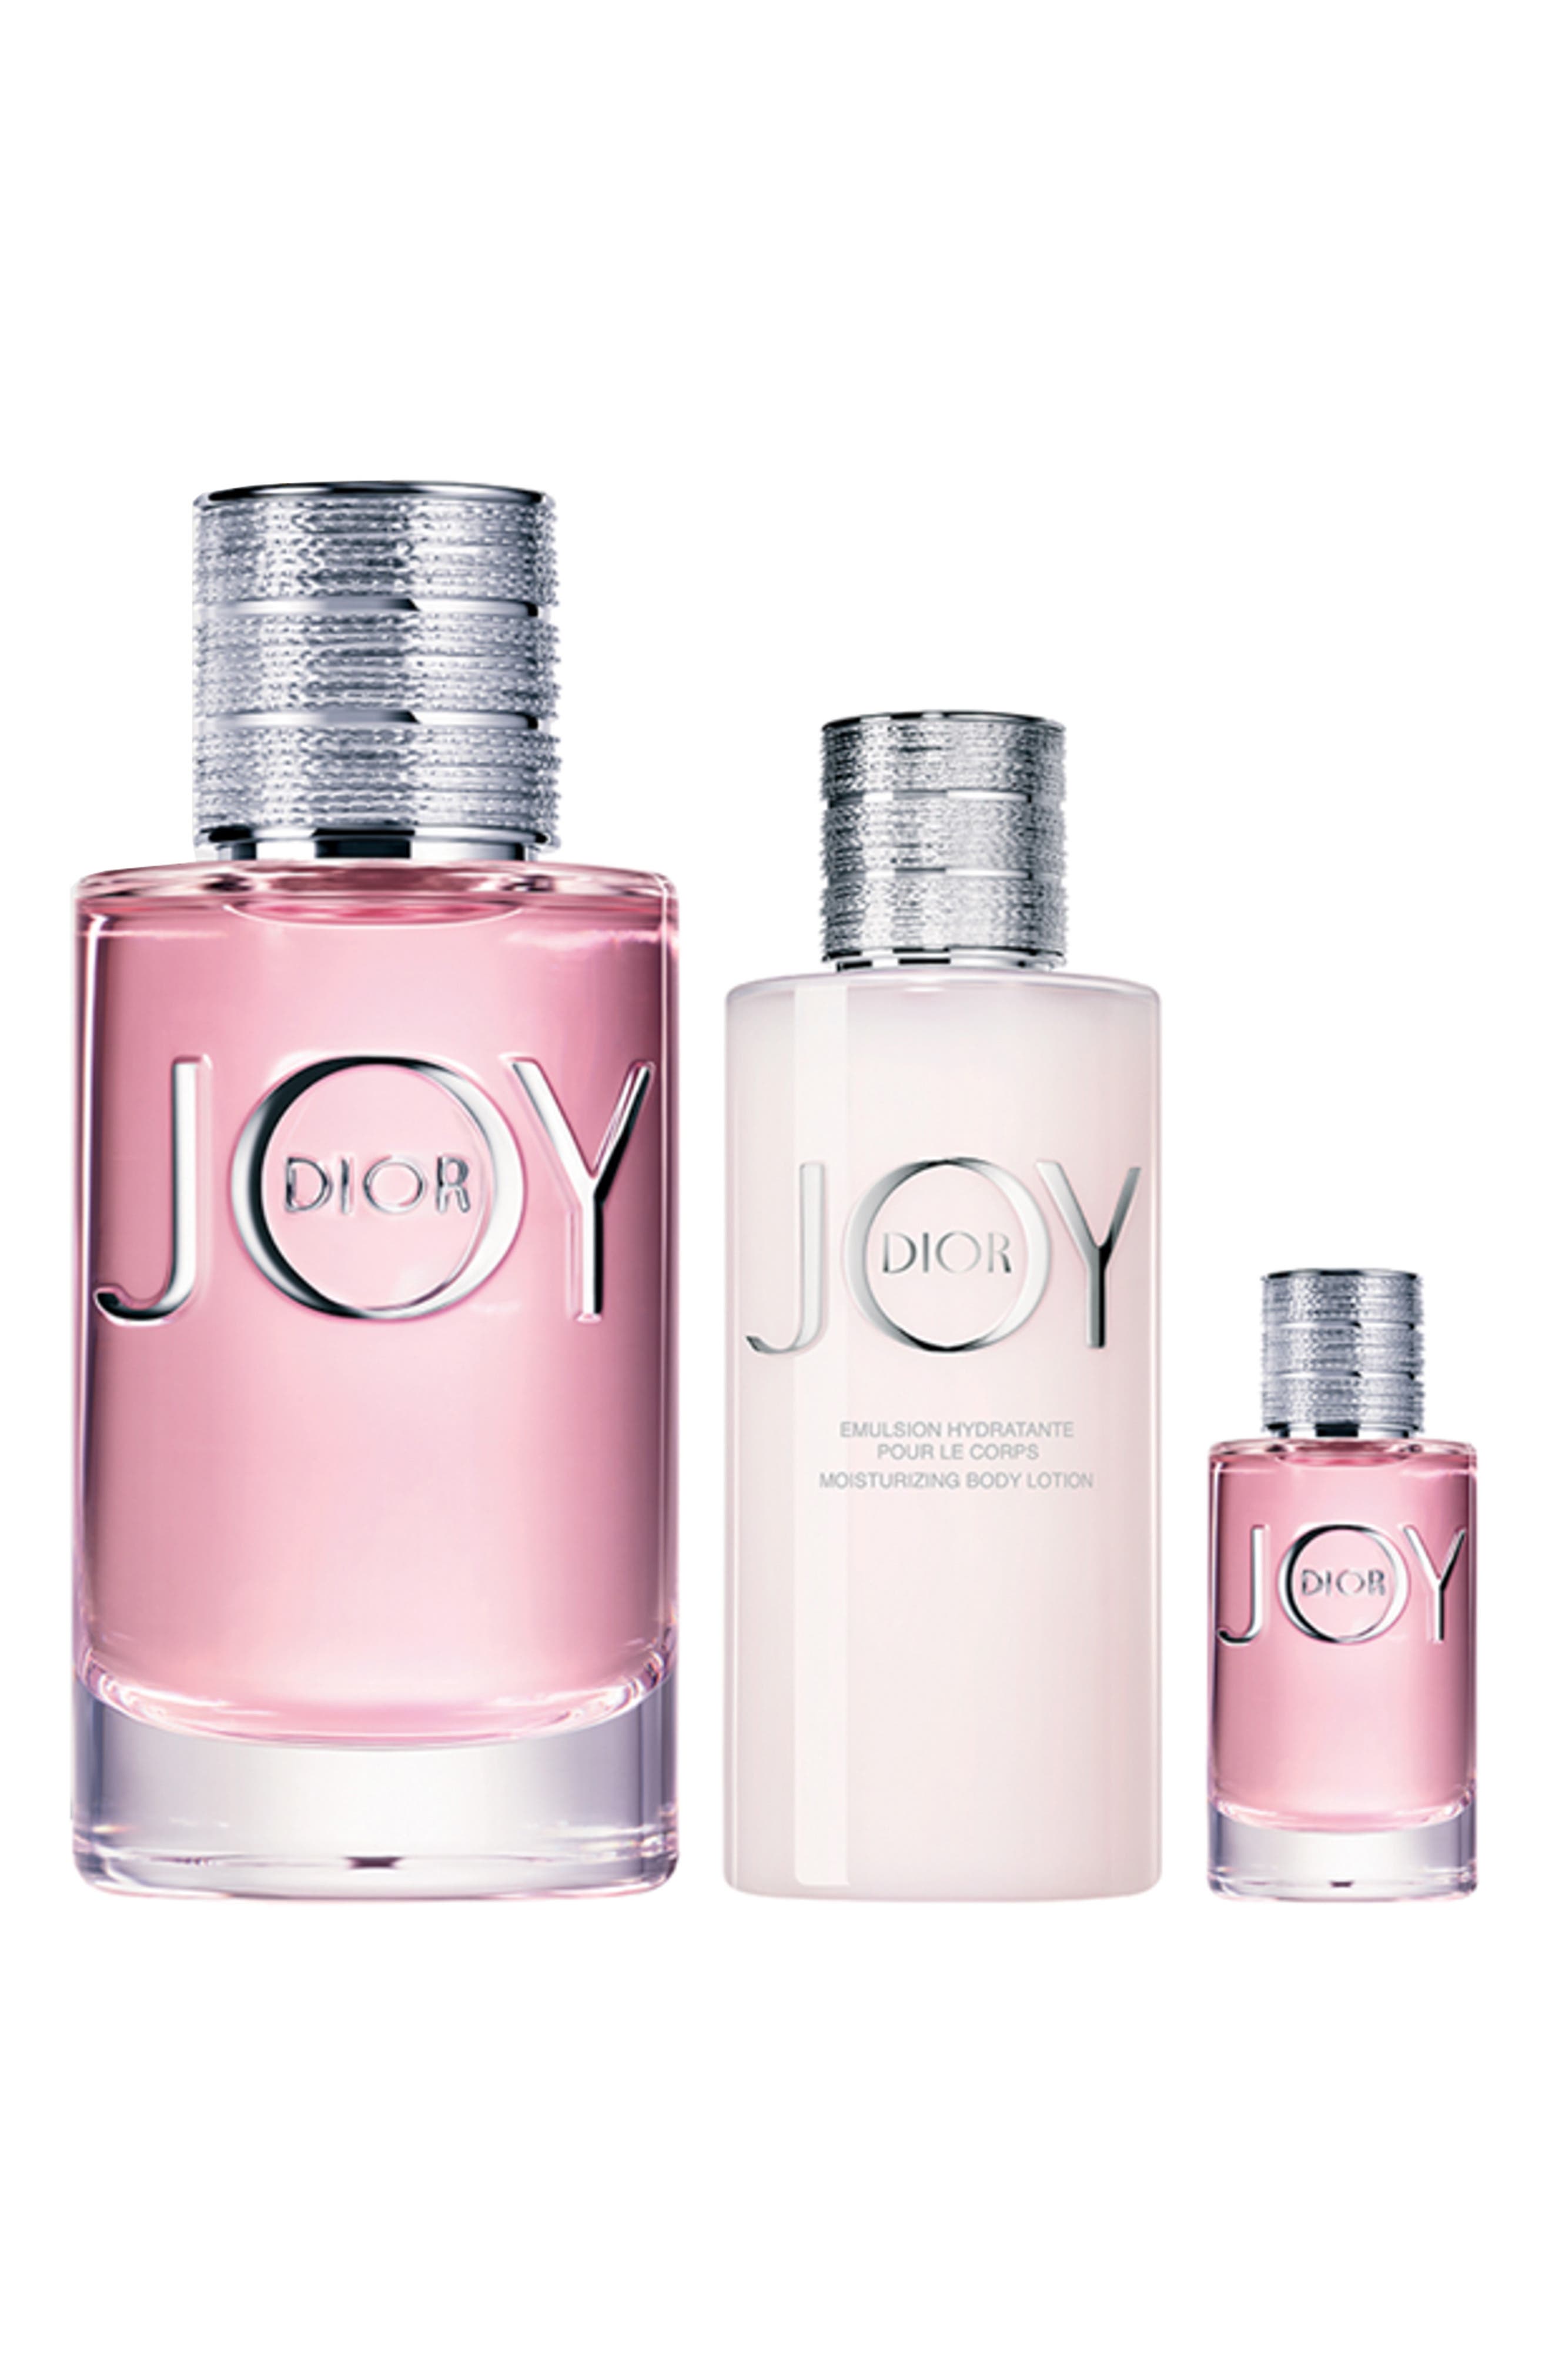 JOY by Dior Eau de Parfum Set (USD $160 